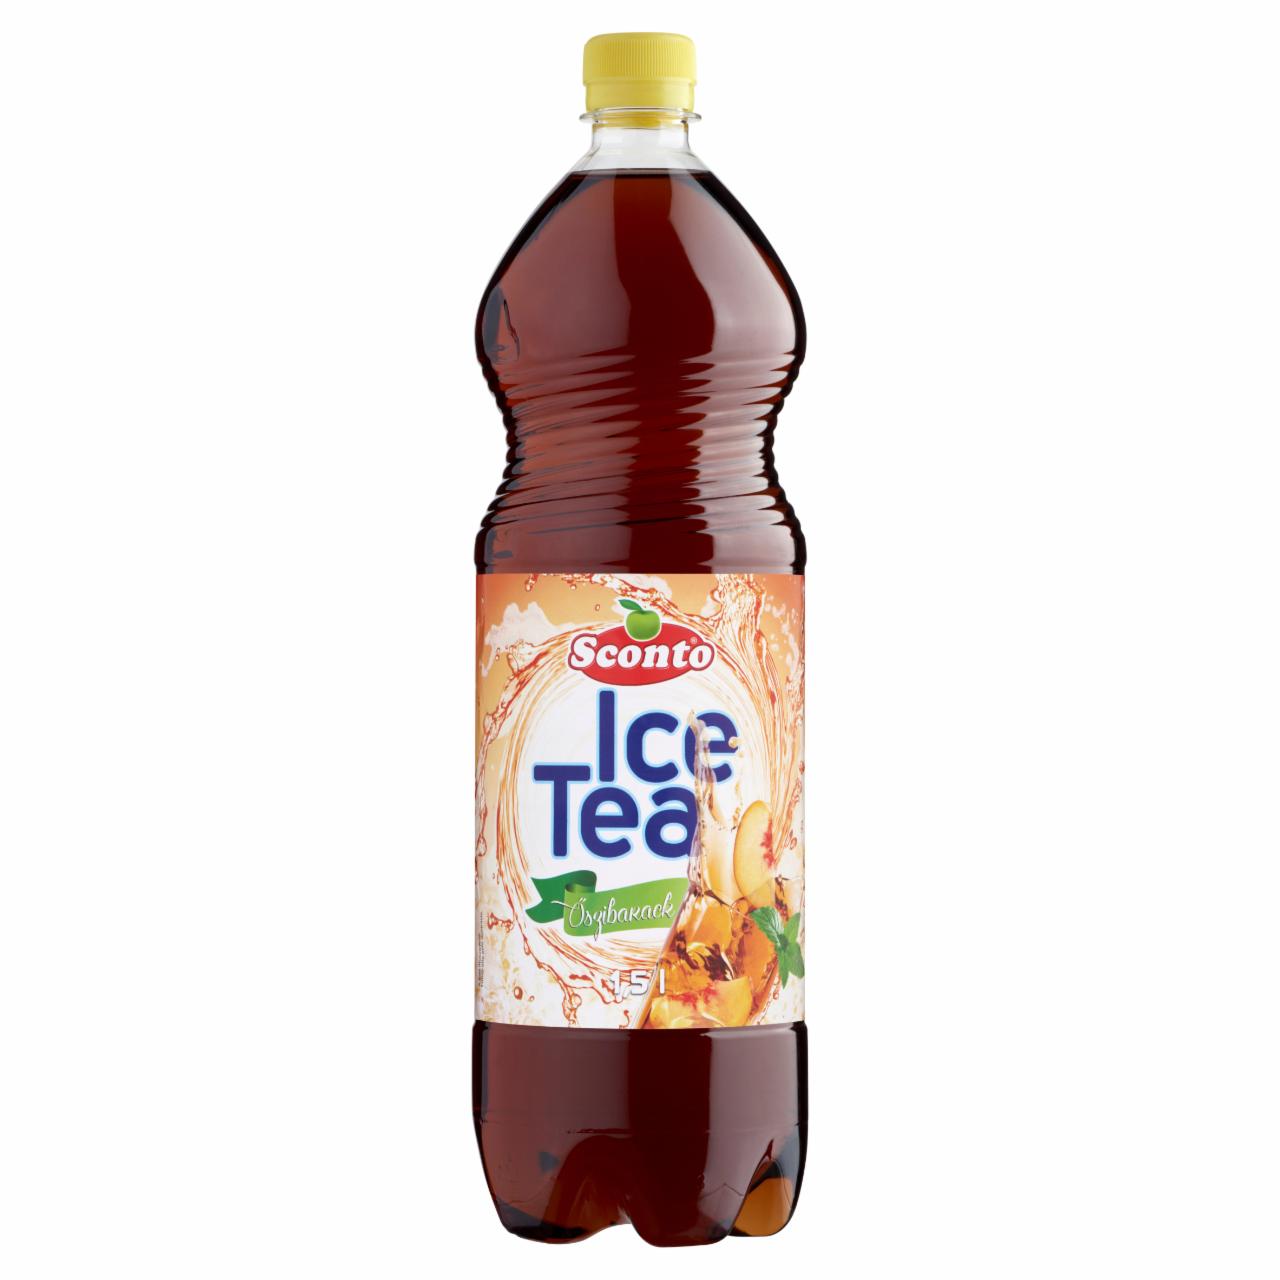 Képek - Sconto Ice Tea energiamentes őszibarack ízű üdítőital édesítőszerekkel 1,5 l